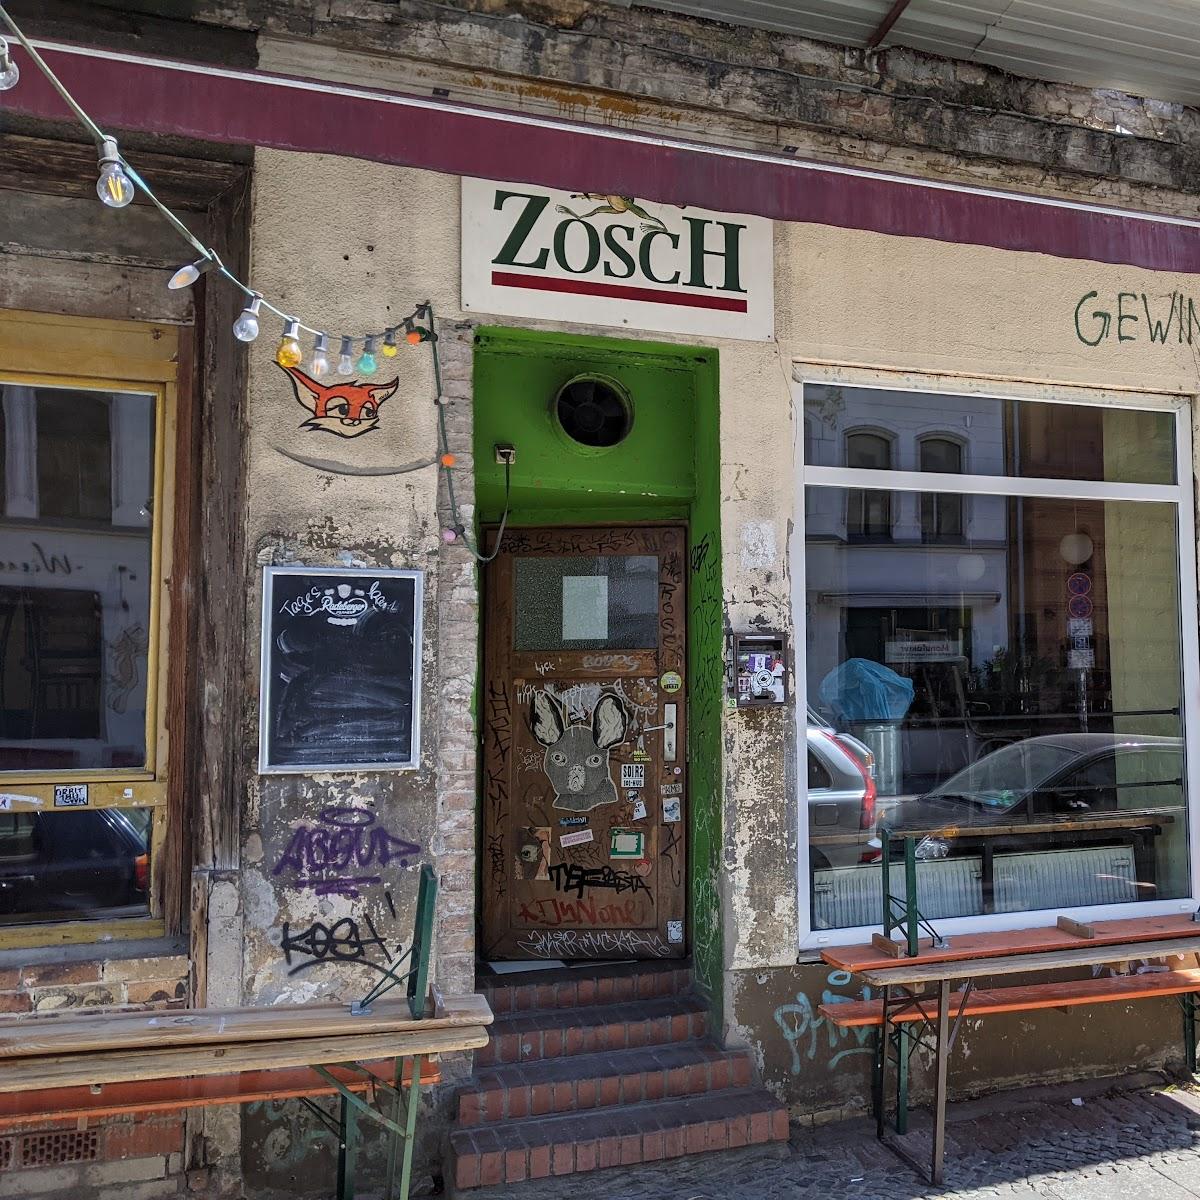 Restaurant "Zosch" in Berlin